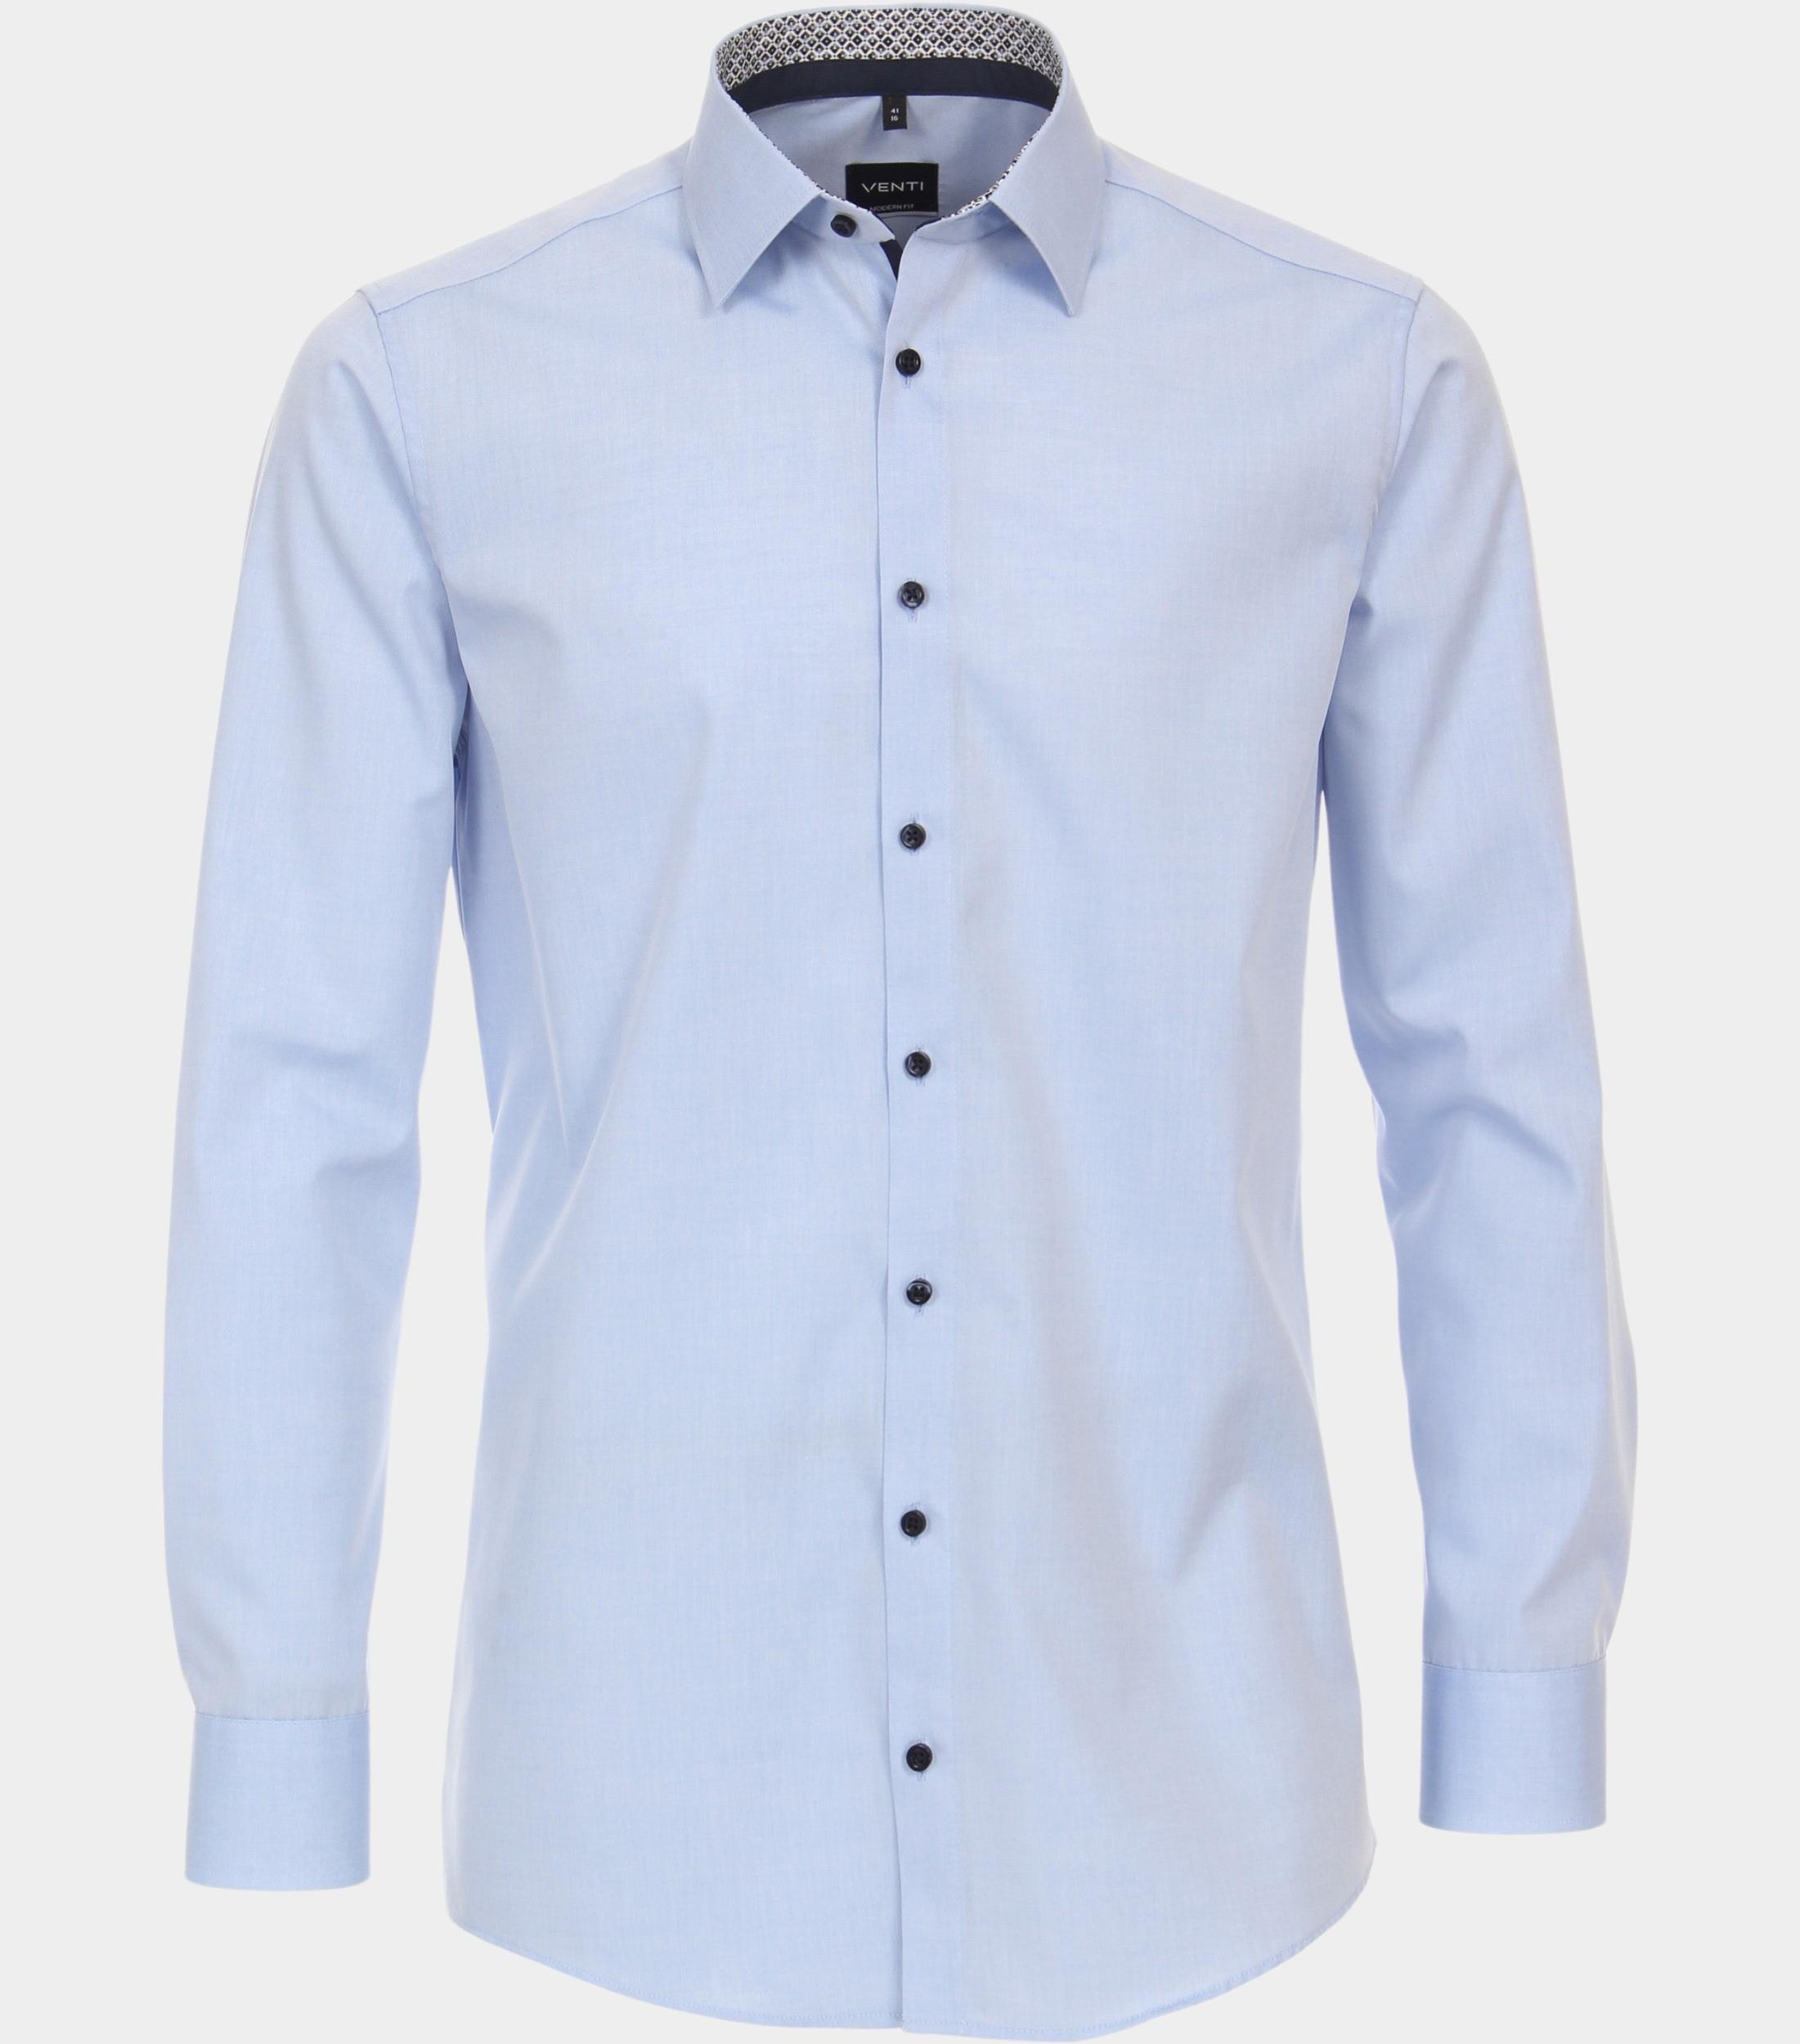 Afbeelding van Venti Business hemd lange mouw blauw kent modern fit 123942200/115